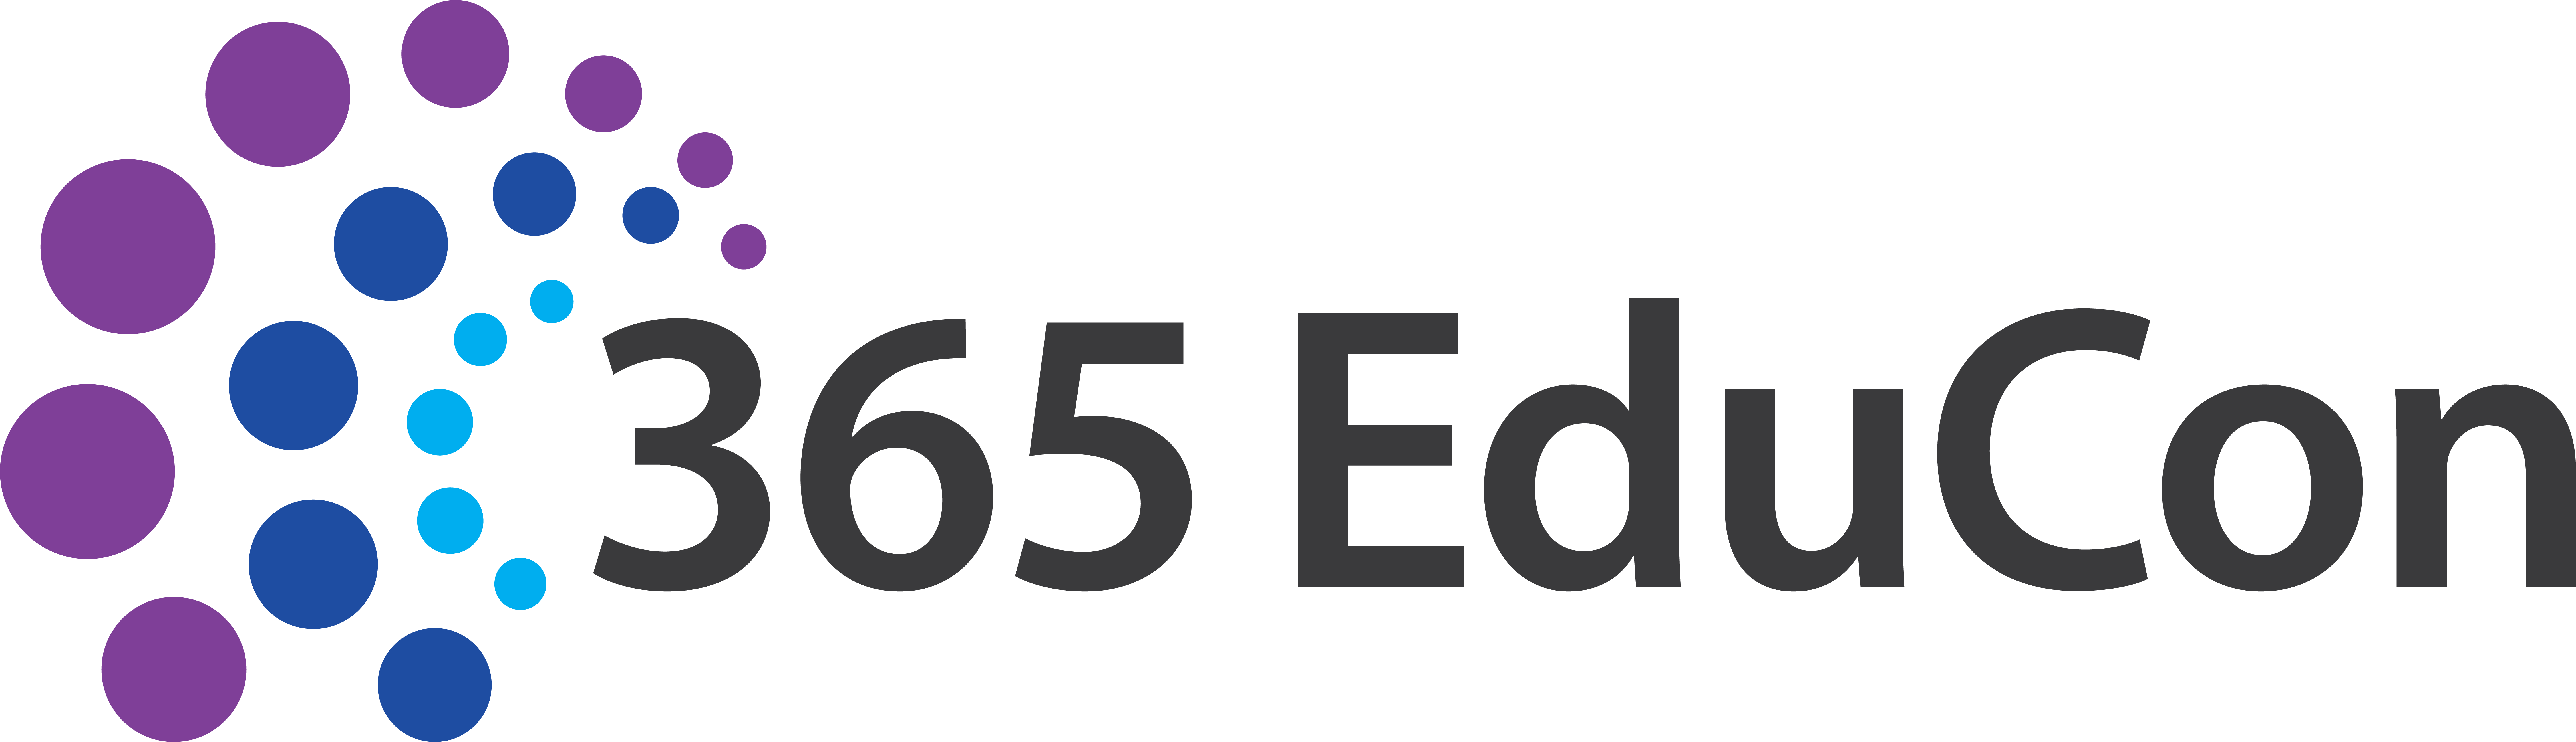 Microsoft 365 EduCon D.C. - A Microsoft 365 Conference